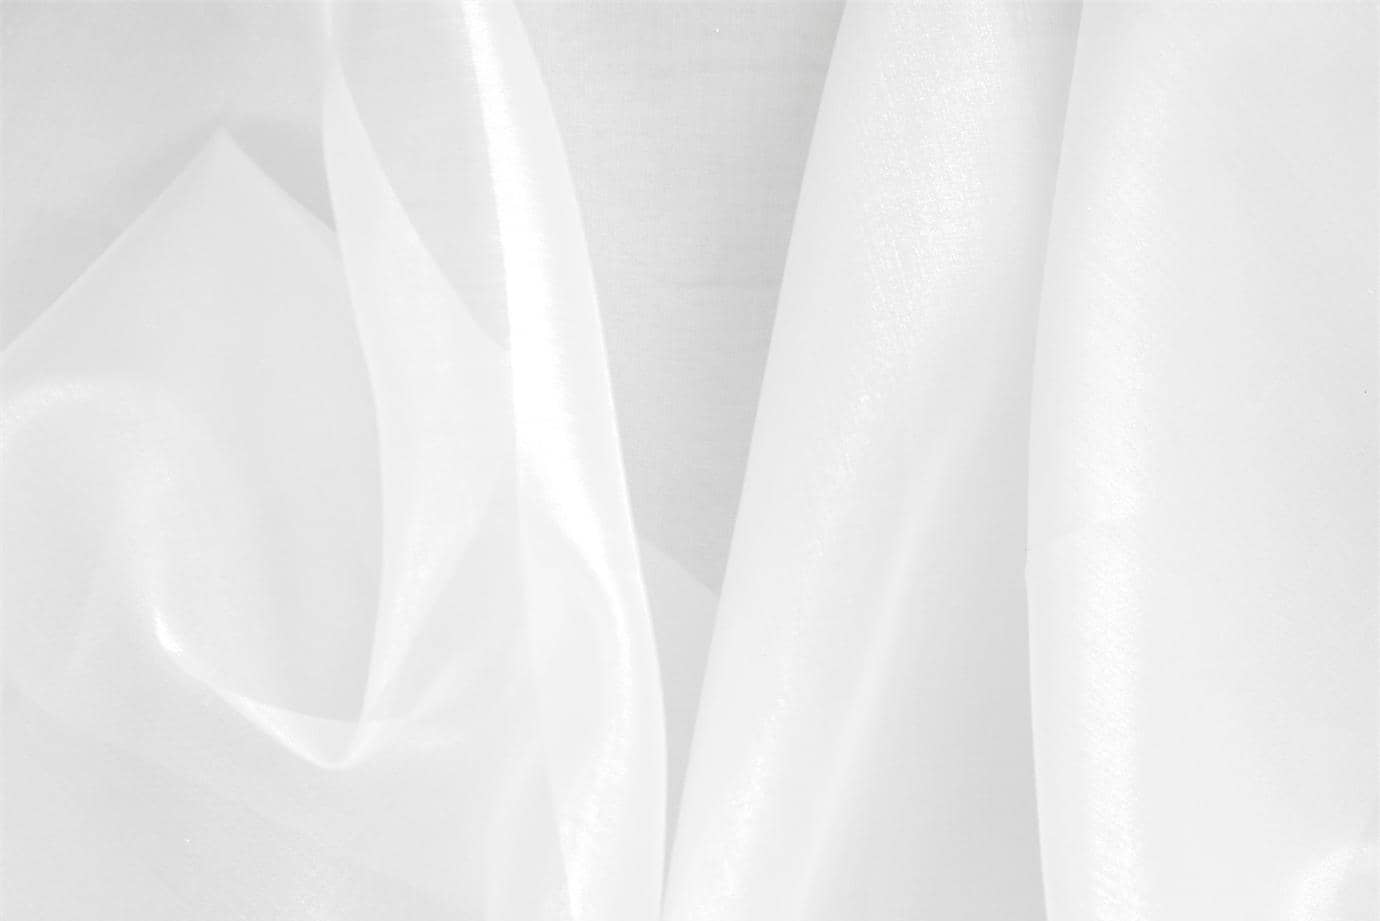 Tessuto Organza Bianco Ottico in seta per abbigliamento